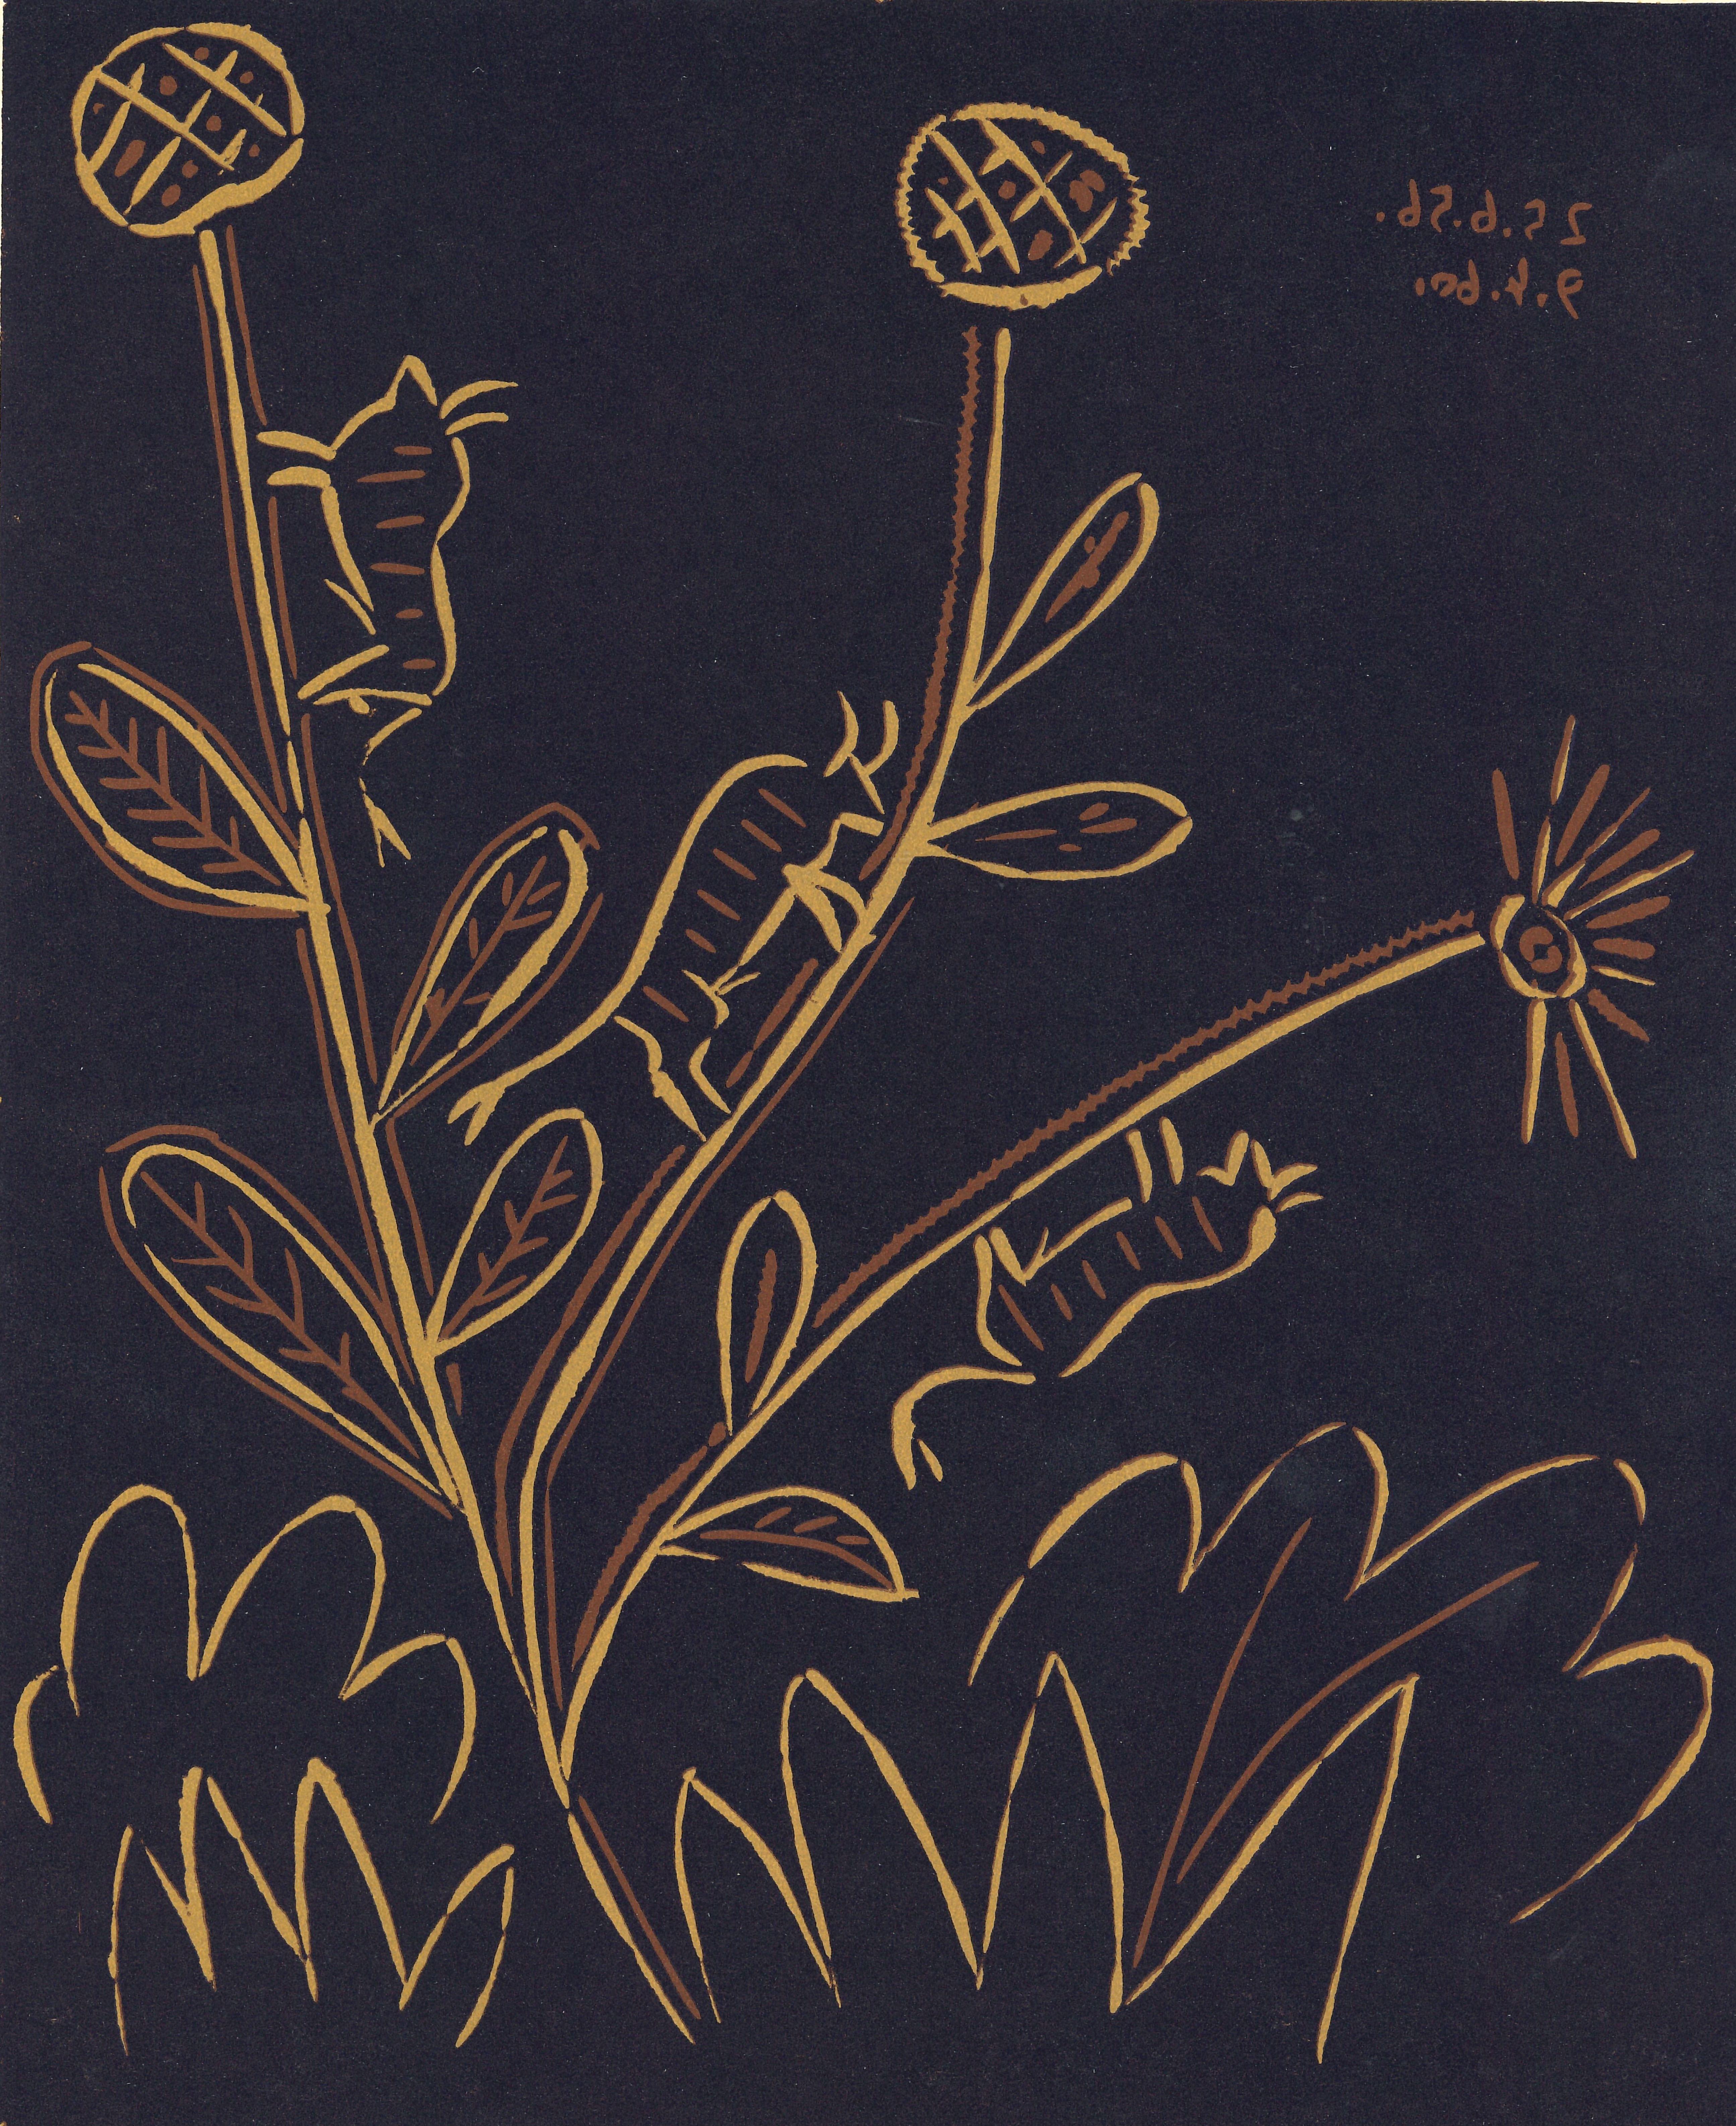 (after) Pablo Picasso Figurative Print - Plante aux Toritos  - Linocut Reproduction After Pablo Picasso - 1962